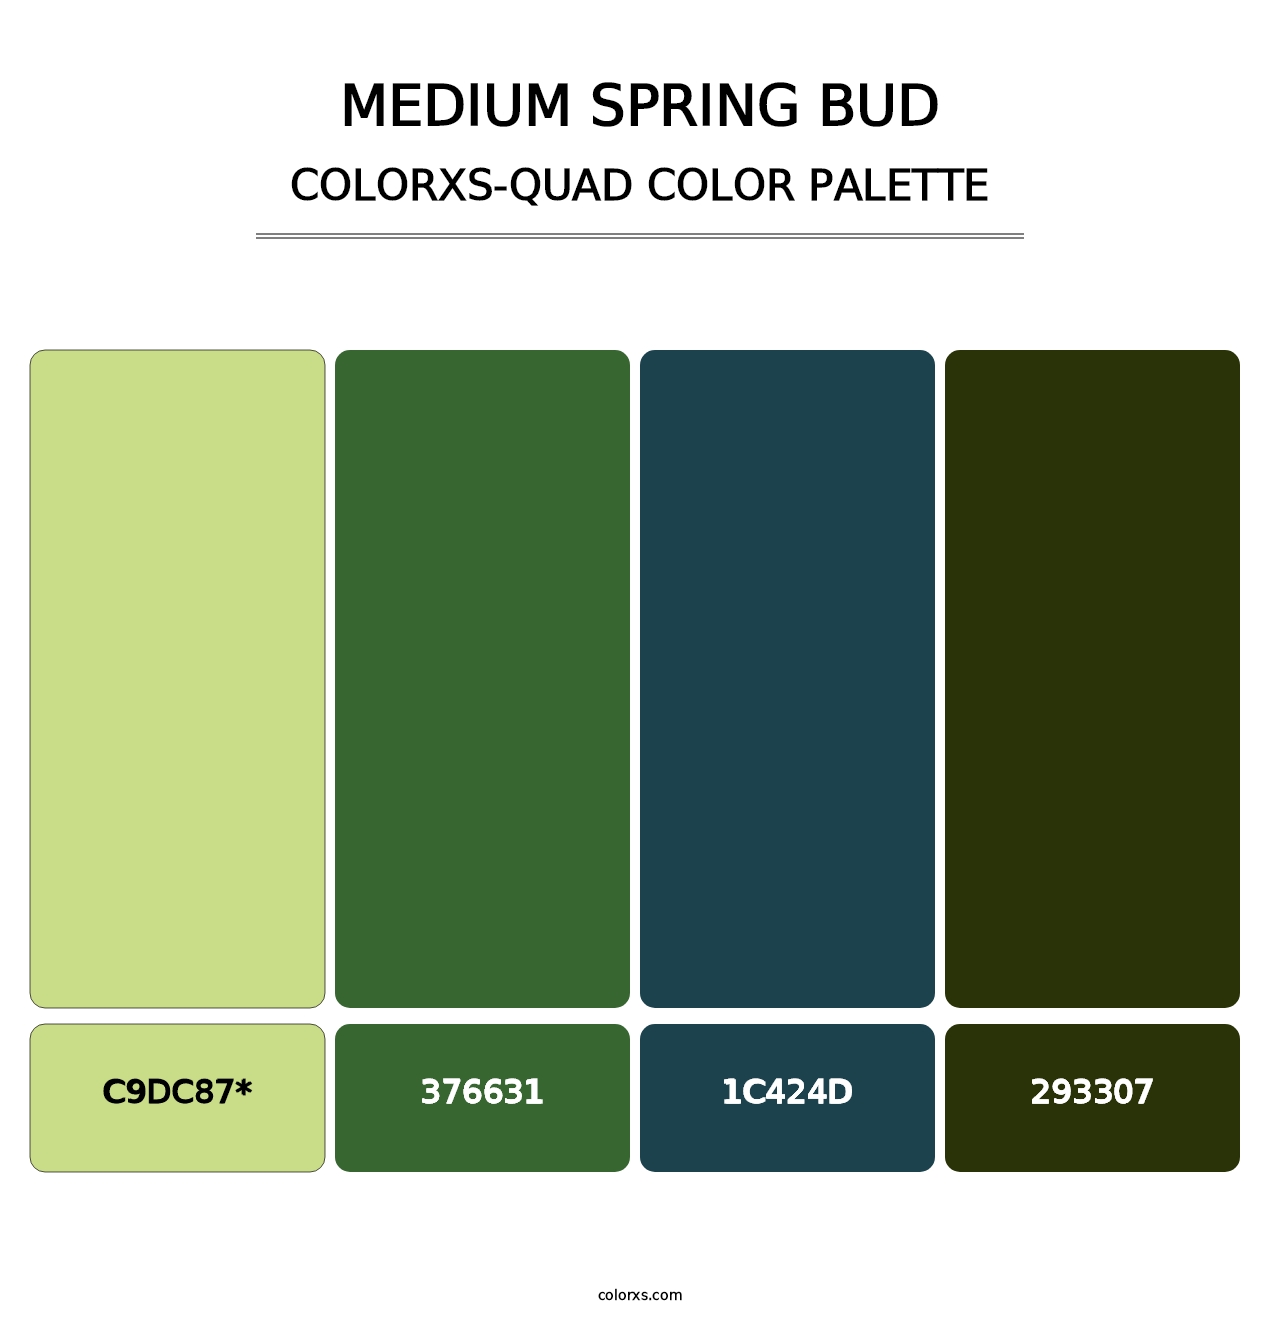 Medium Spring Bud - Colorxs Quad Palette